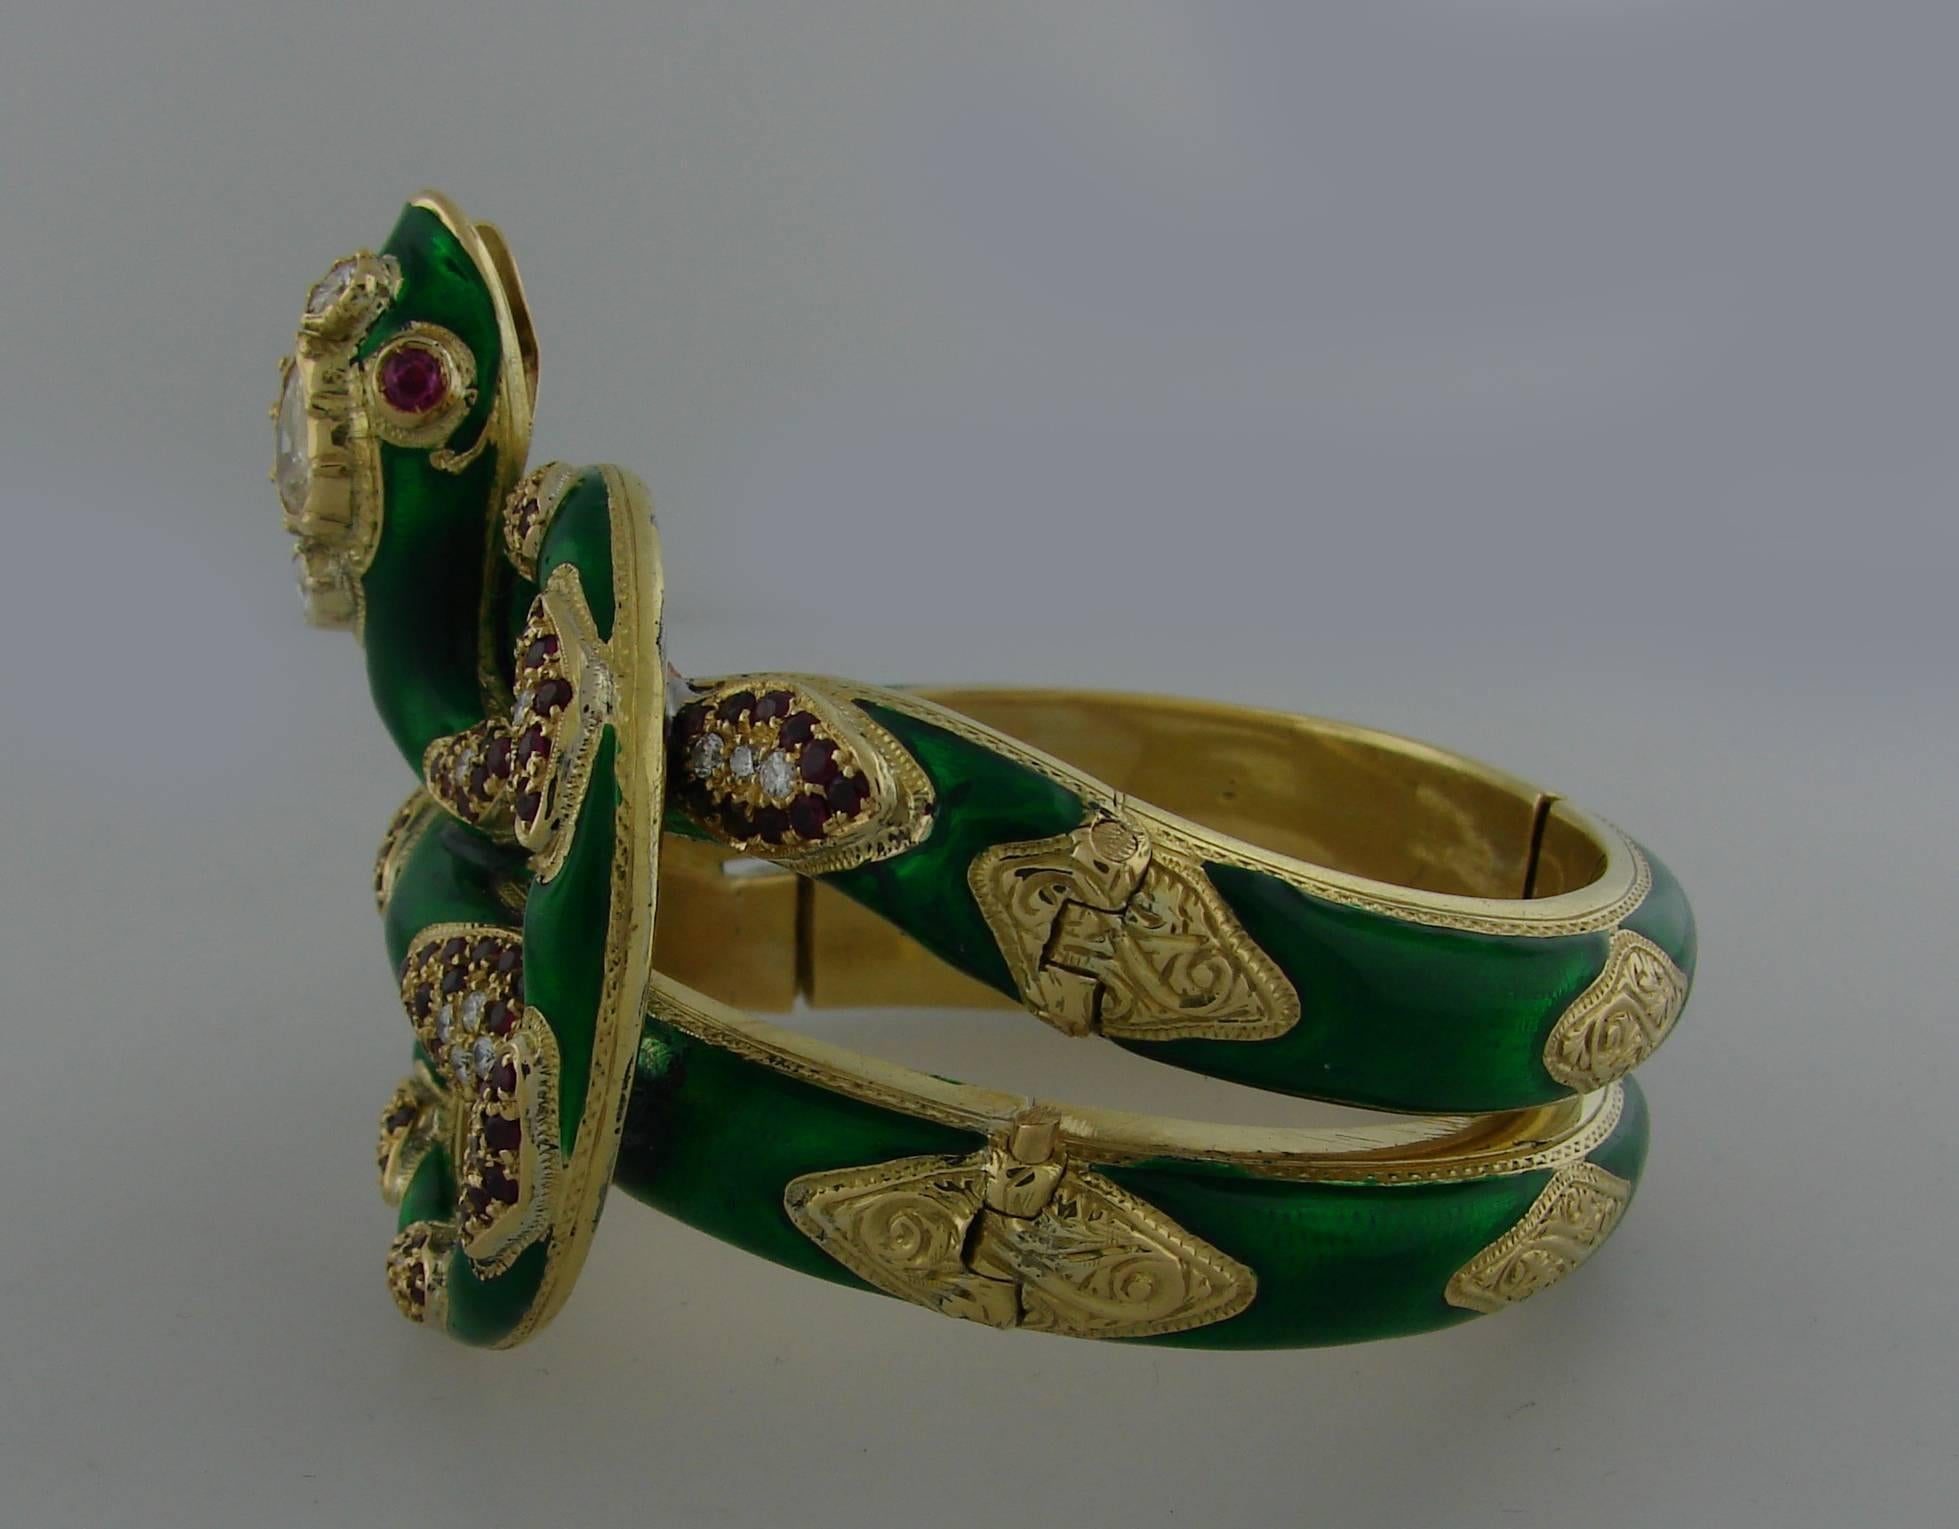  Nardi Venice Ruby Enamel Diamond Gold Snake Bangle Bracelet 2